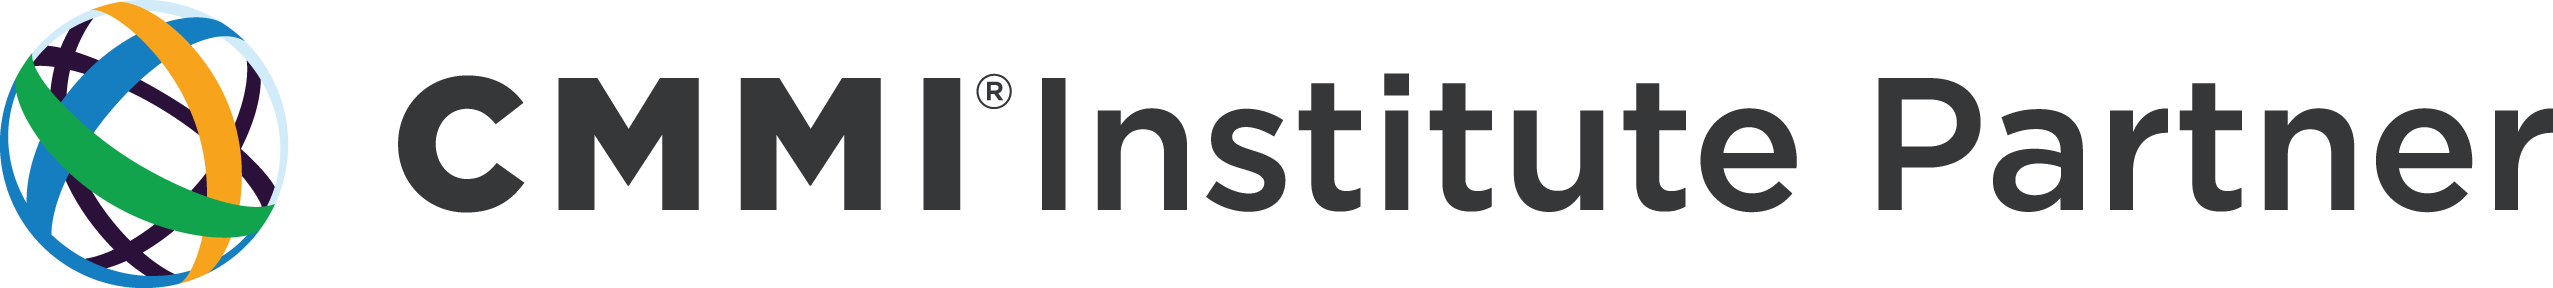 CMMI Transition Partner logo